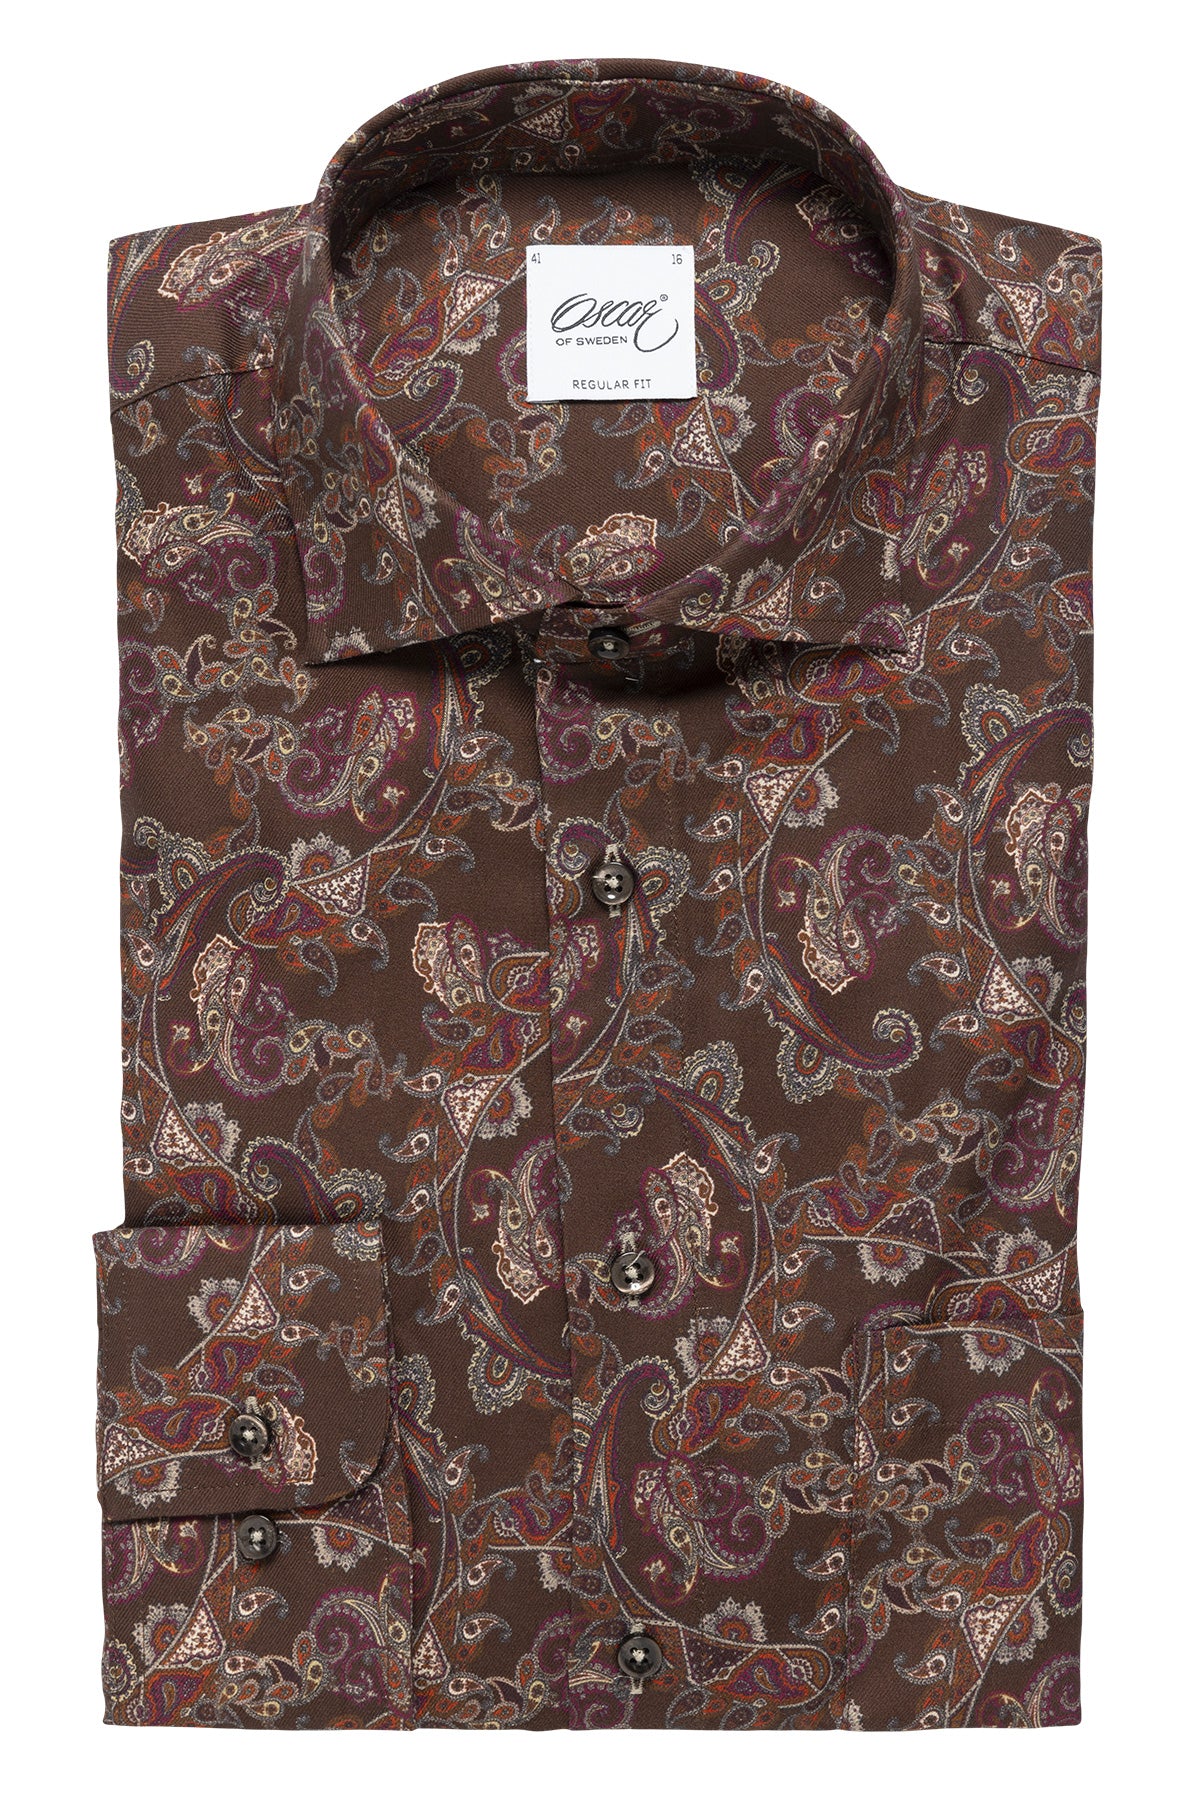 Brown paisley printed regular fit shirt